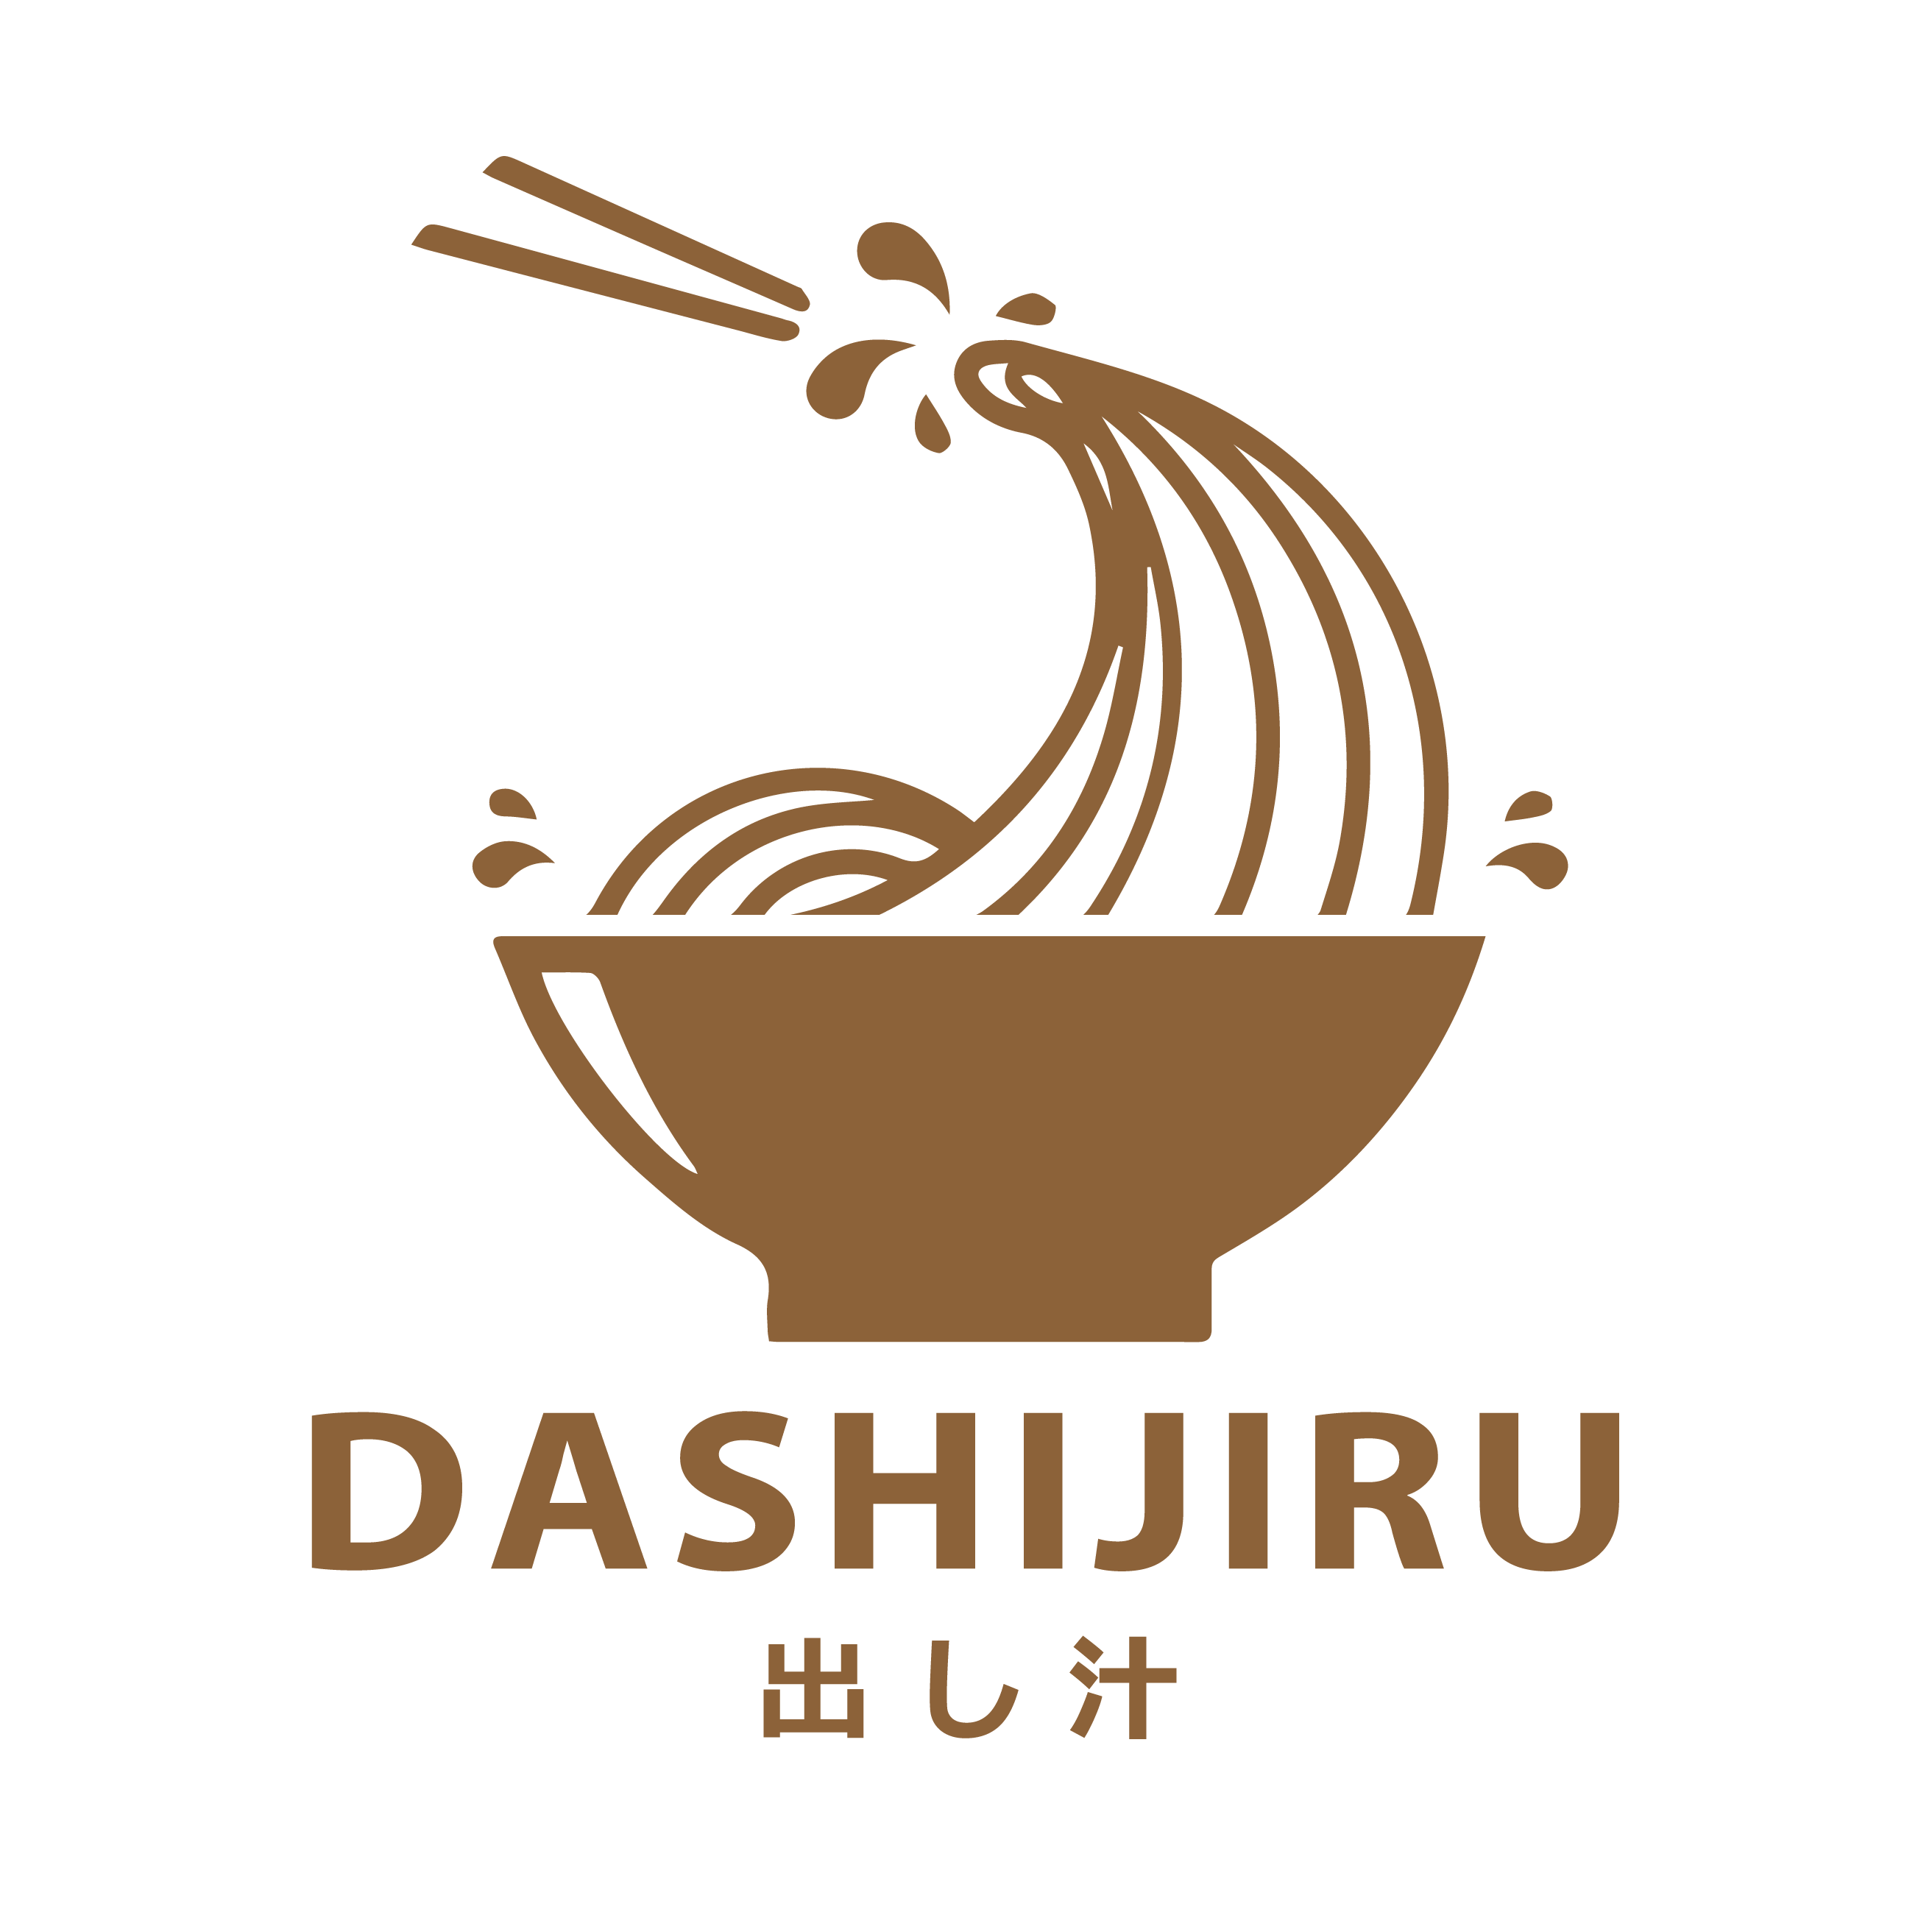 Dashijiru Photo